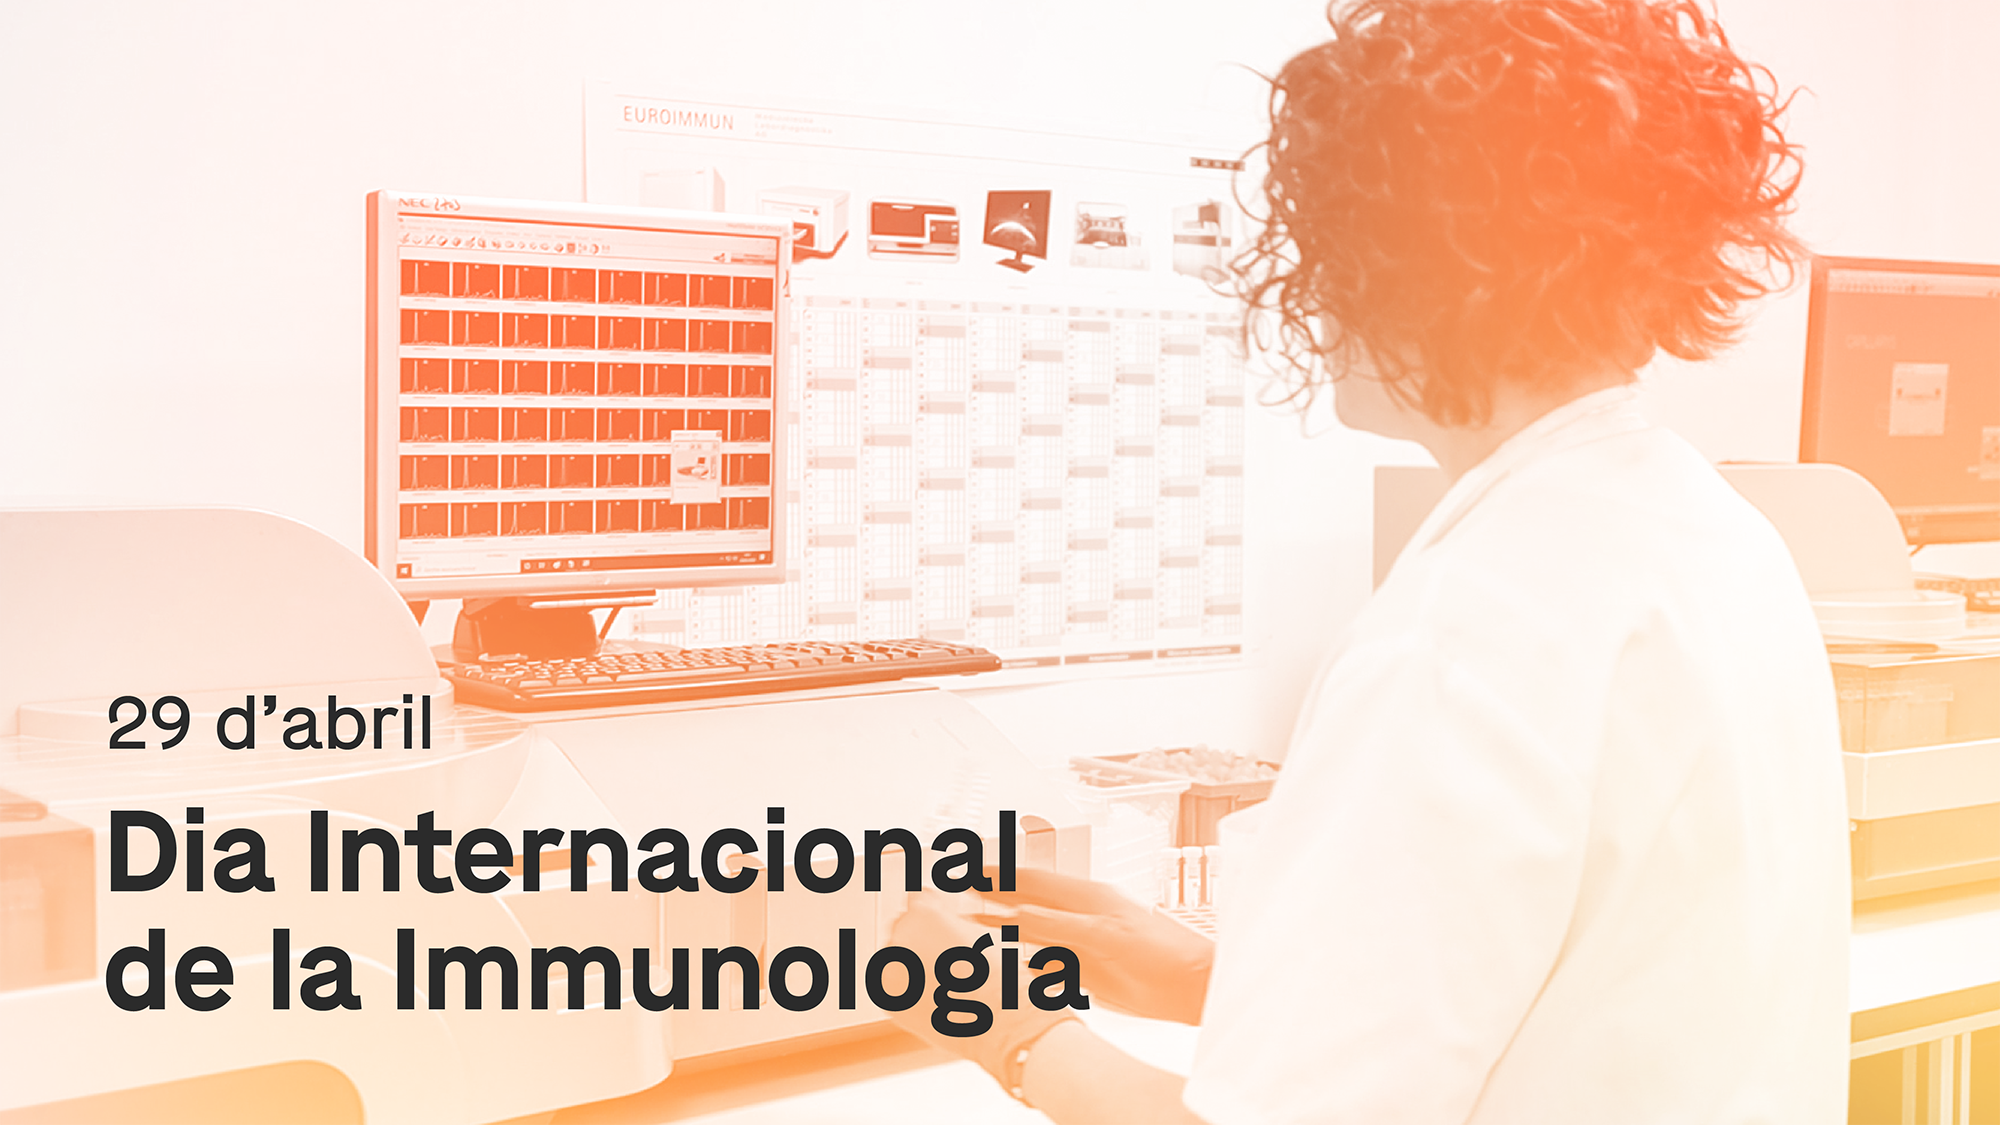 Dia Internacional de la Immunologia